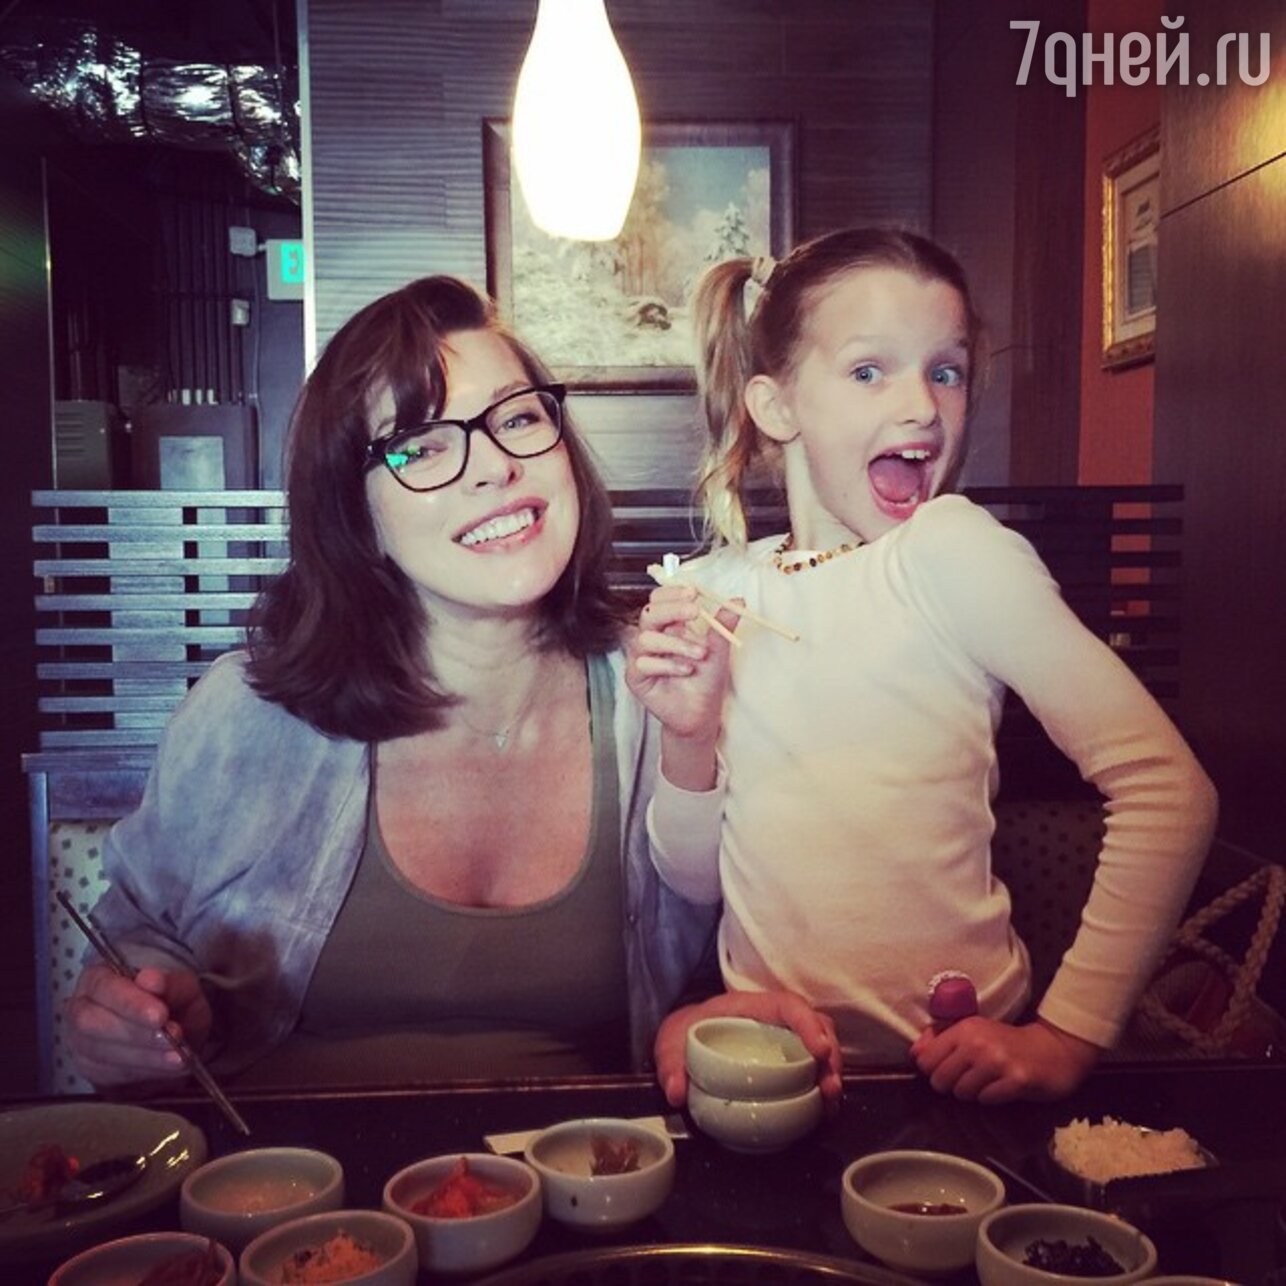 Мила Йовович фото с дочкой